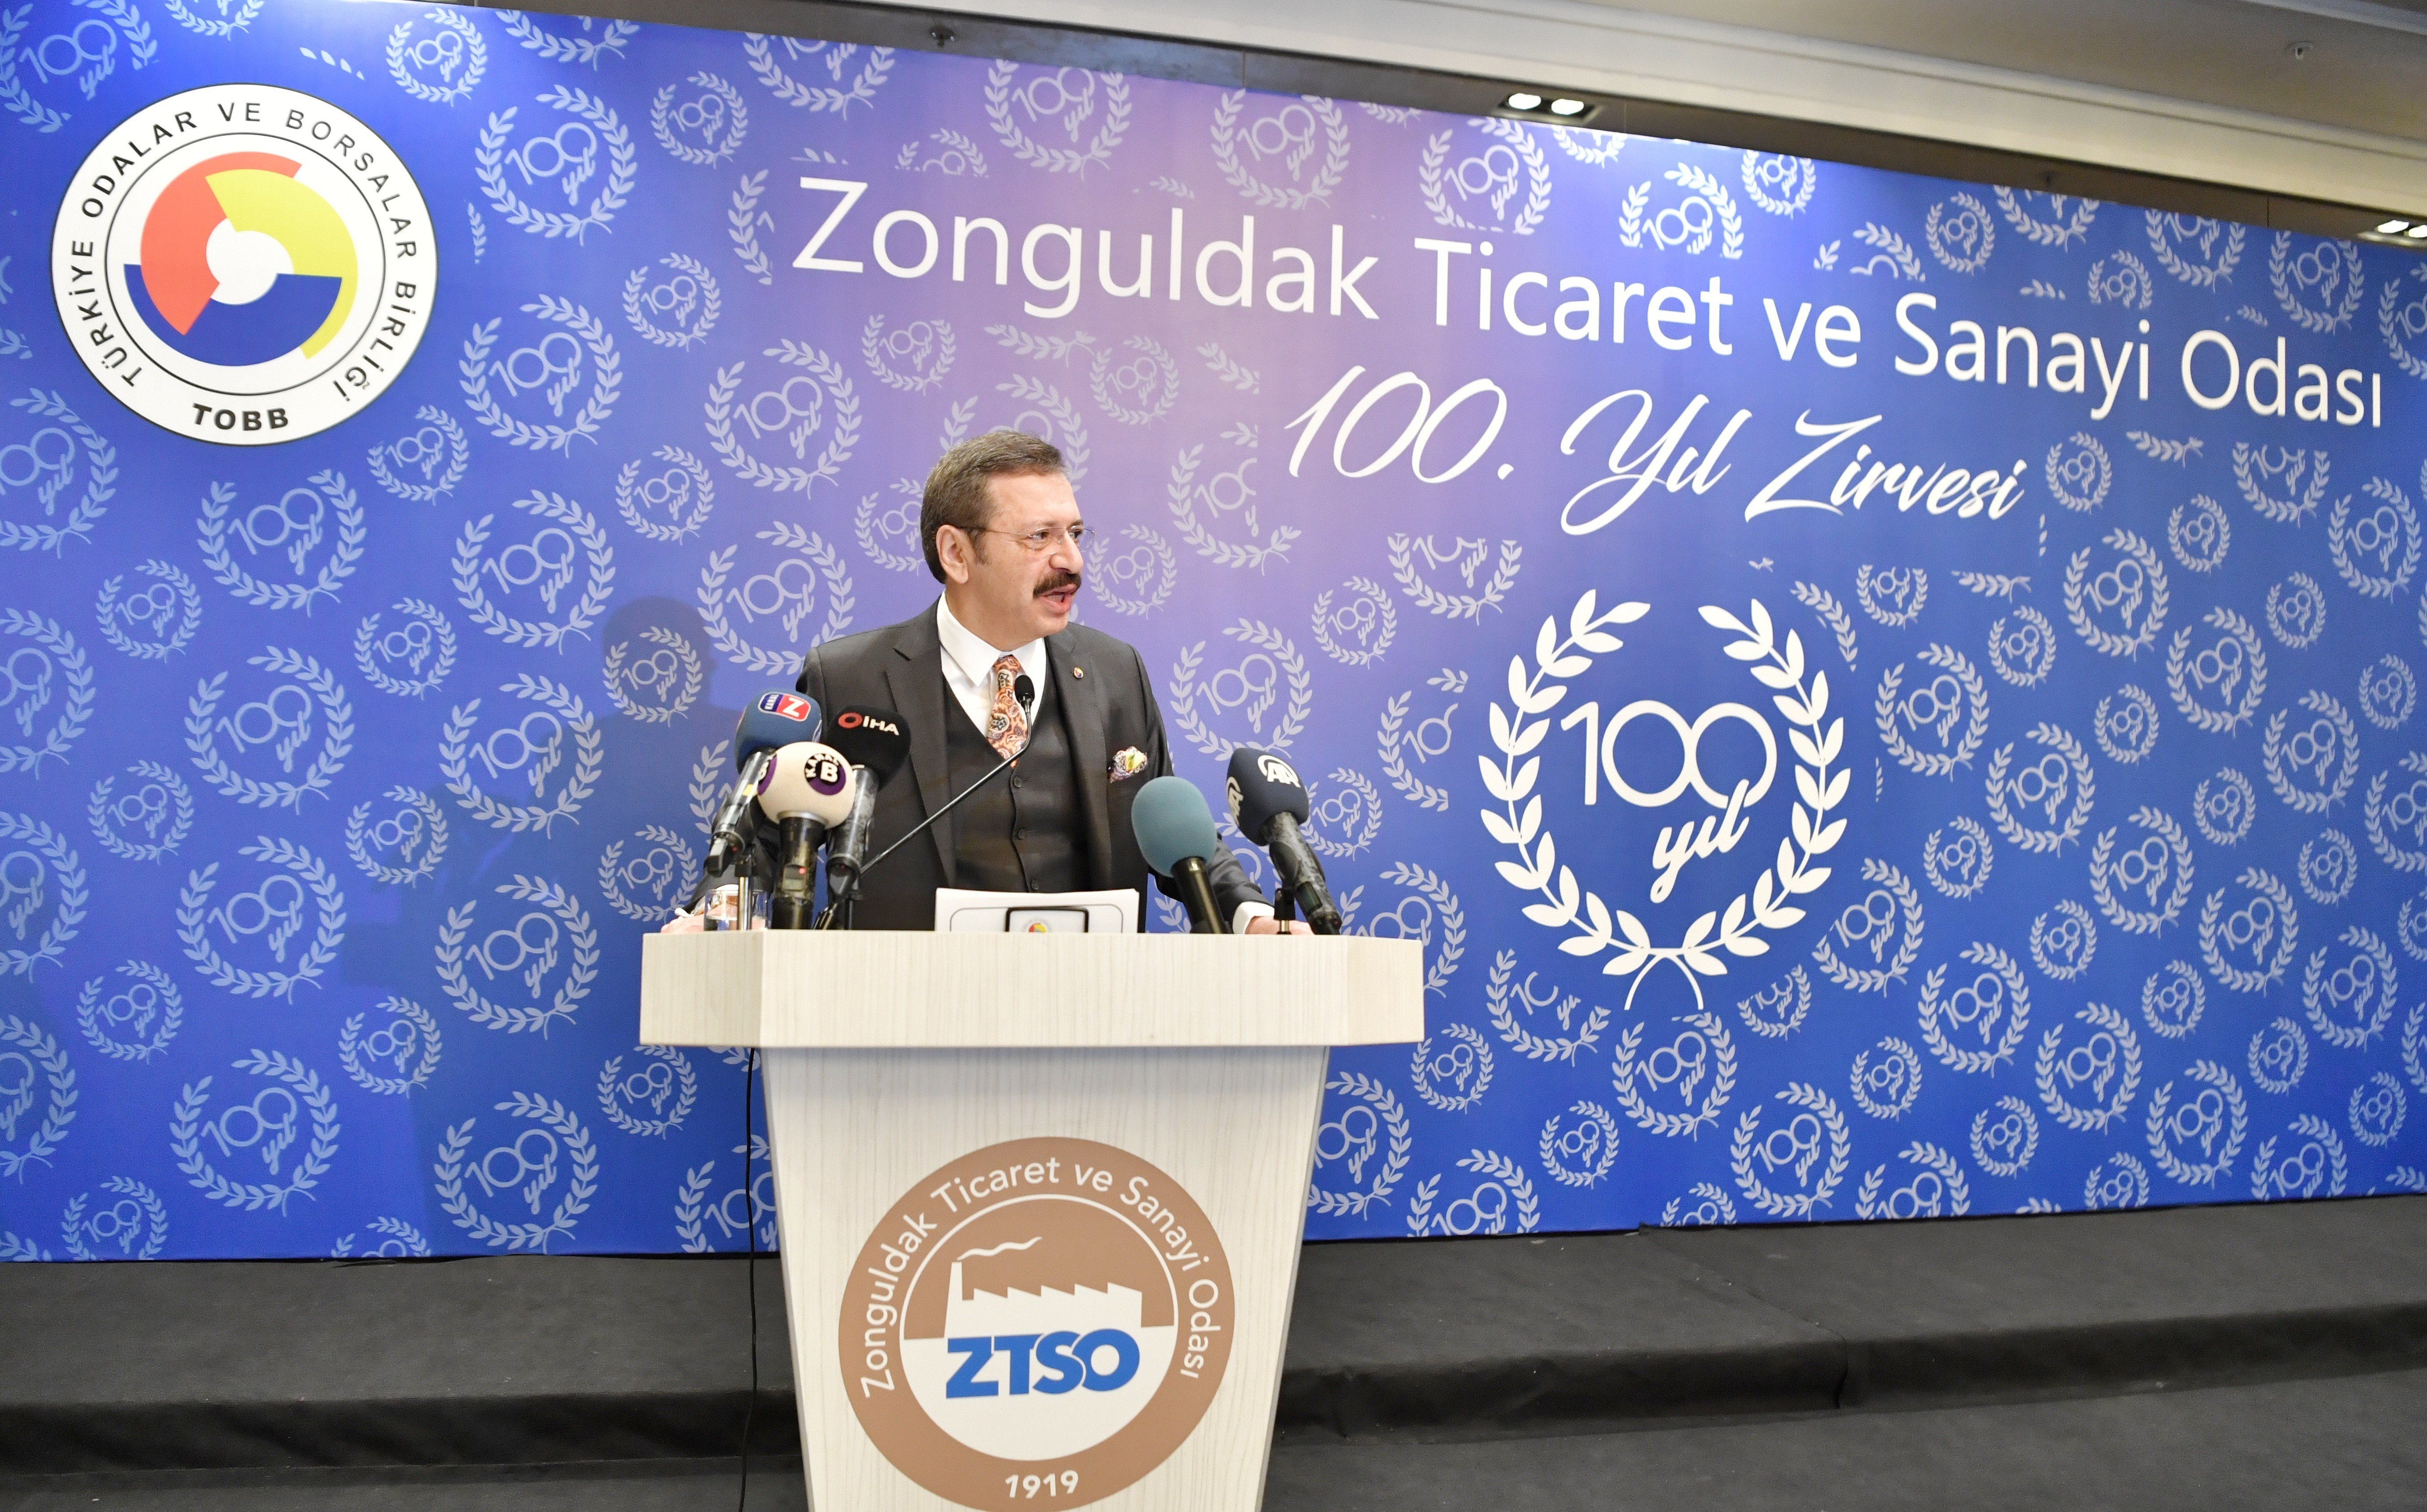 Hisarcıklıoğlu: “Zonguldak’yeniden bir cazibe merkezi olacak” - 3